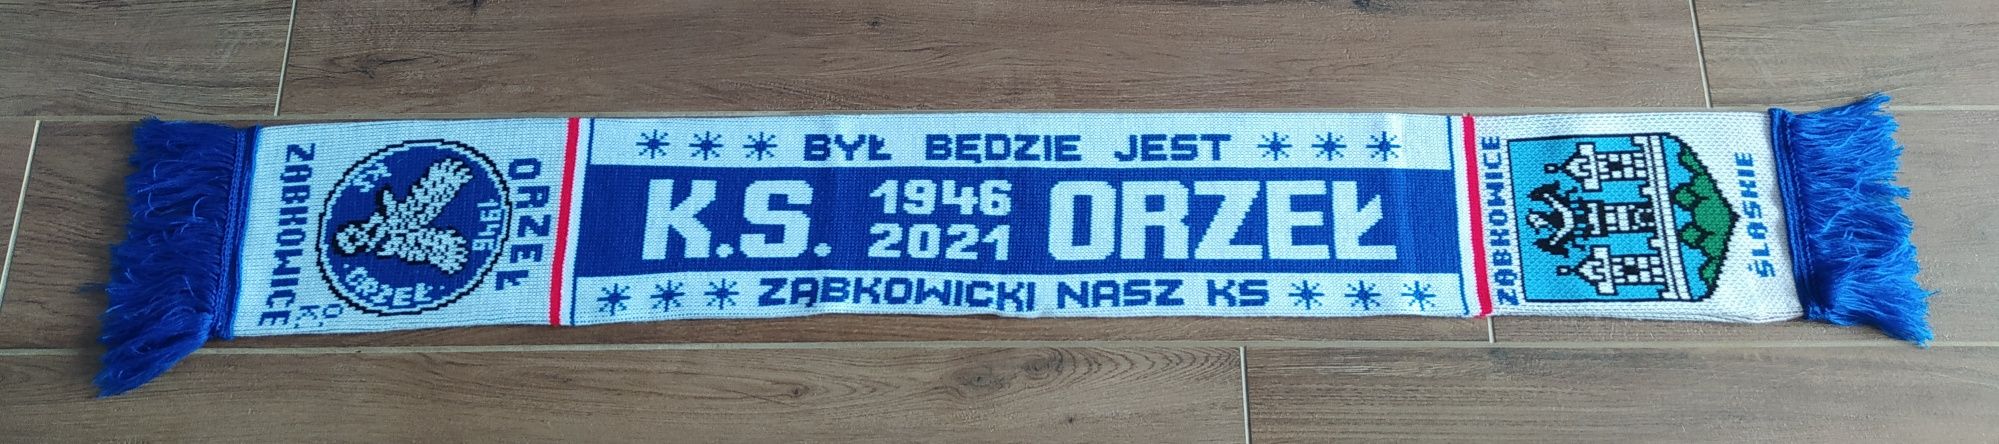 Szalik Orzeł Ząbkowice Śląskie Śląsk Wrocław firma OK